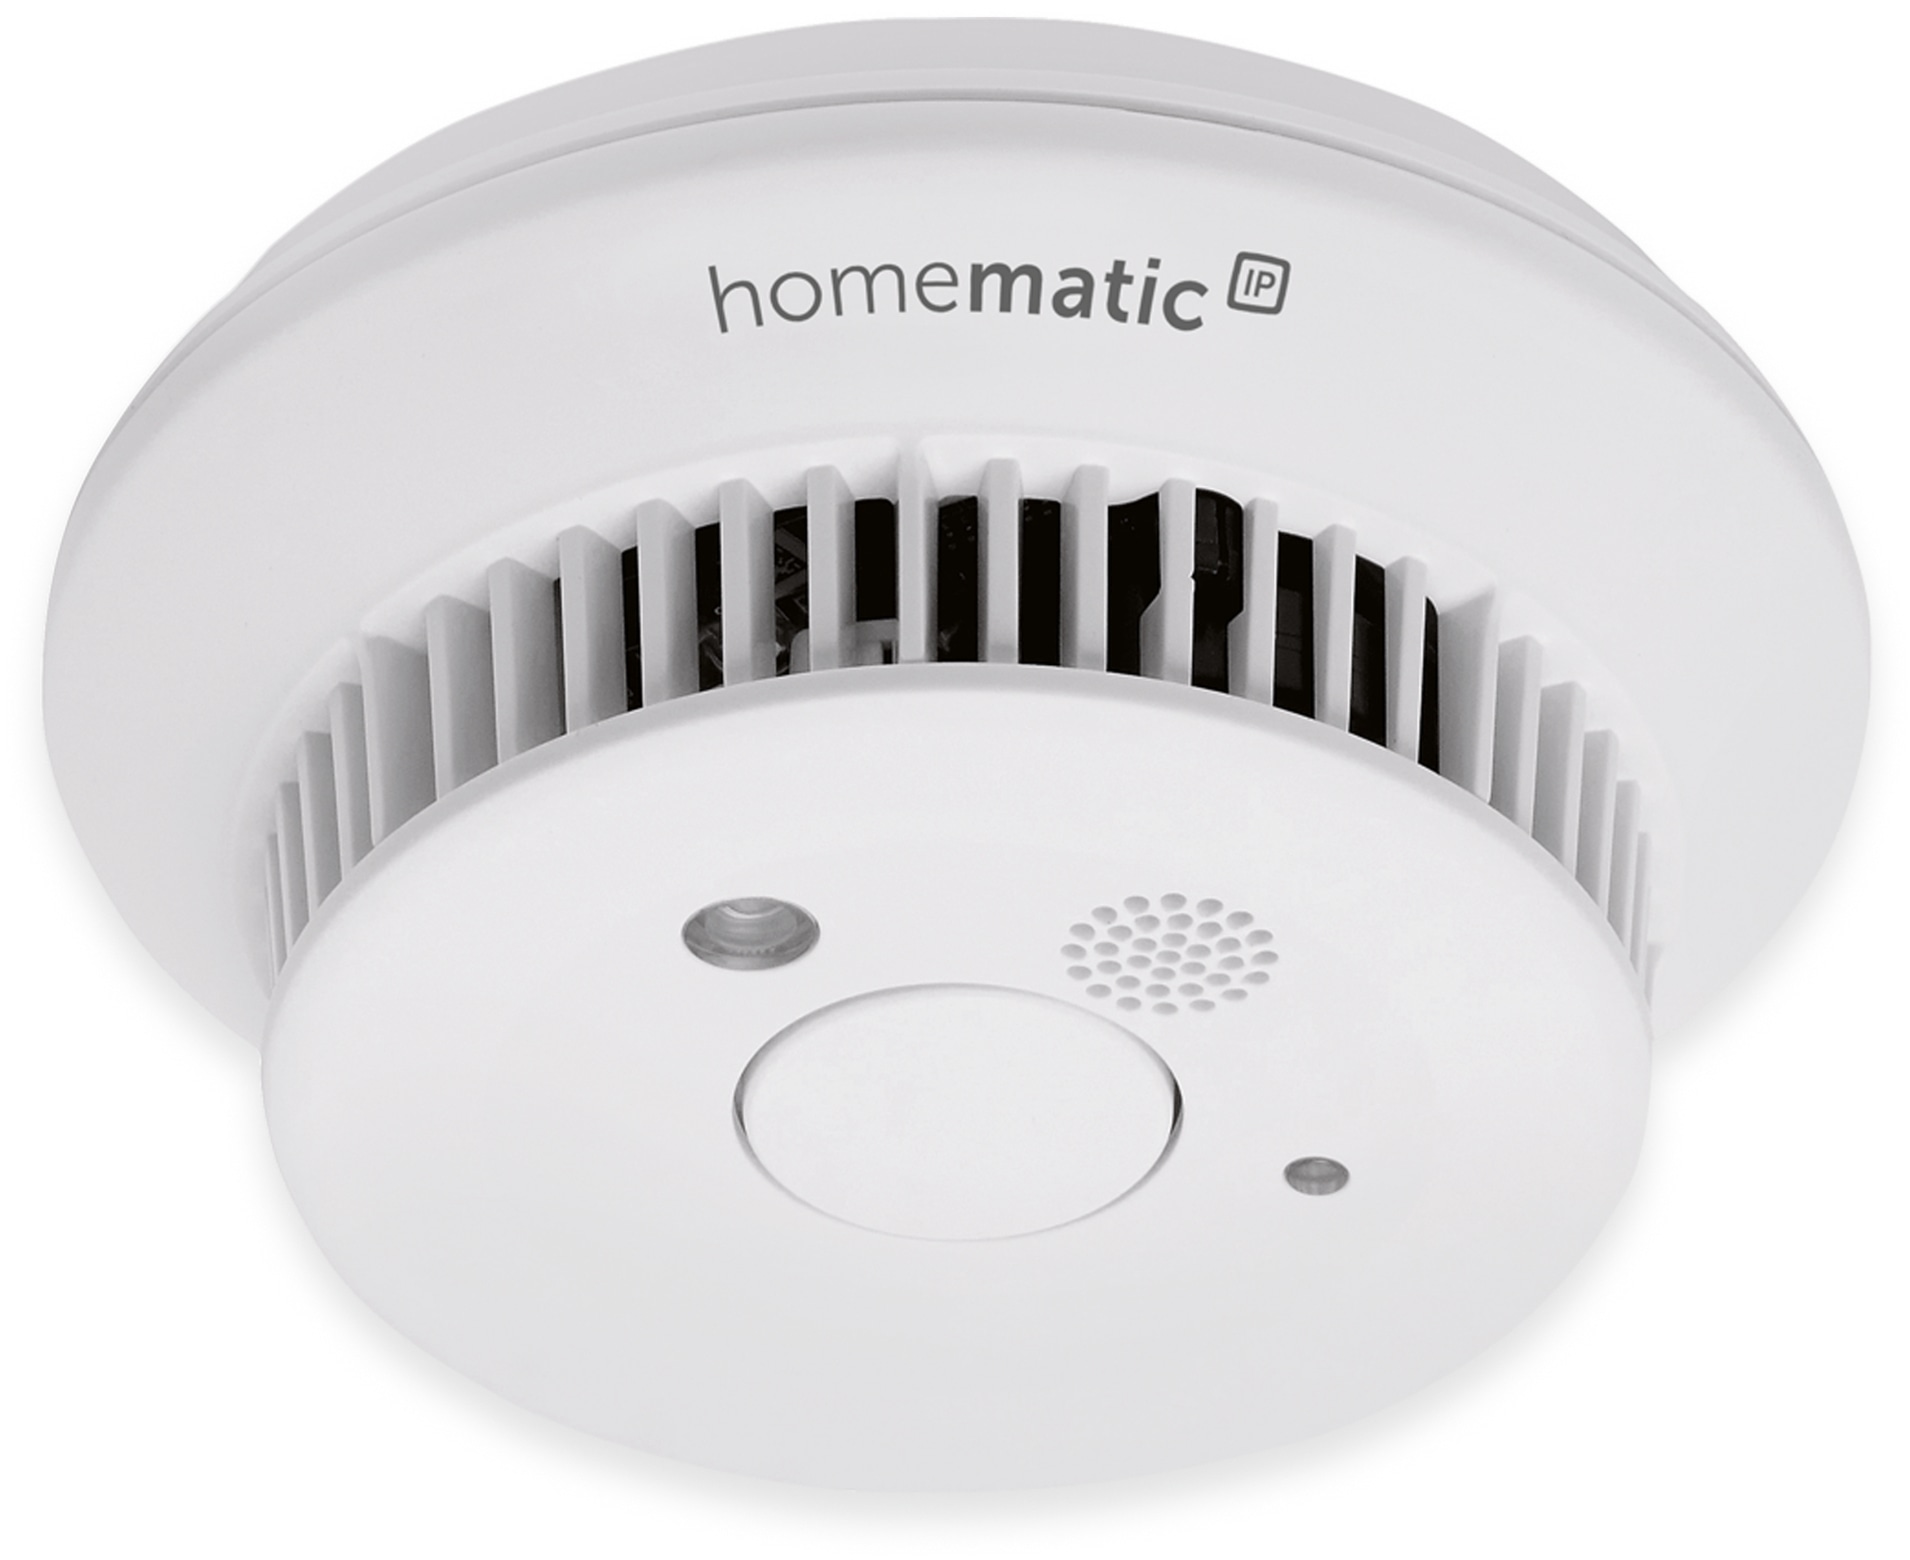 HOMEMATIC IP Smart Home 142685A0, Rauchwarnmelder